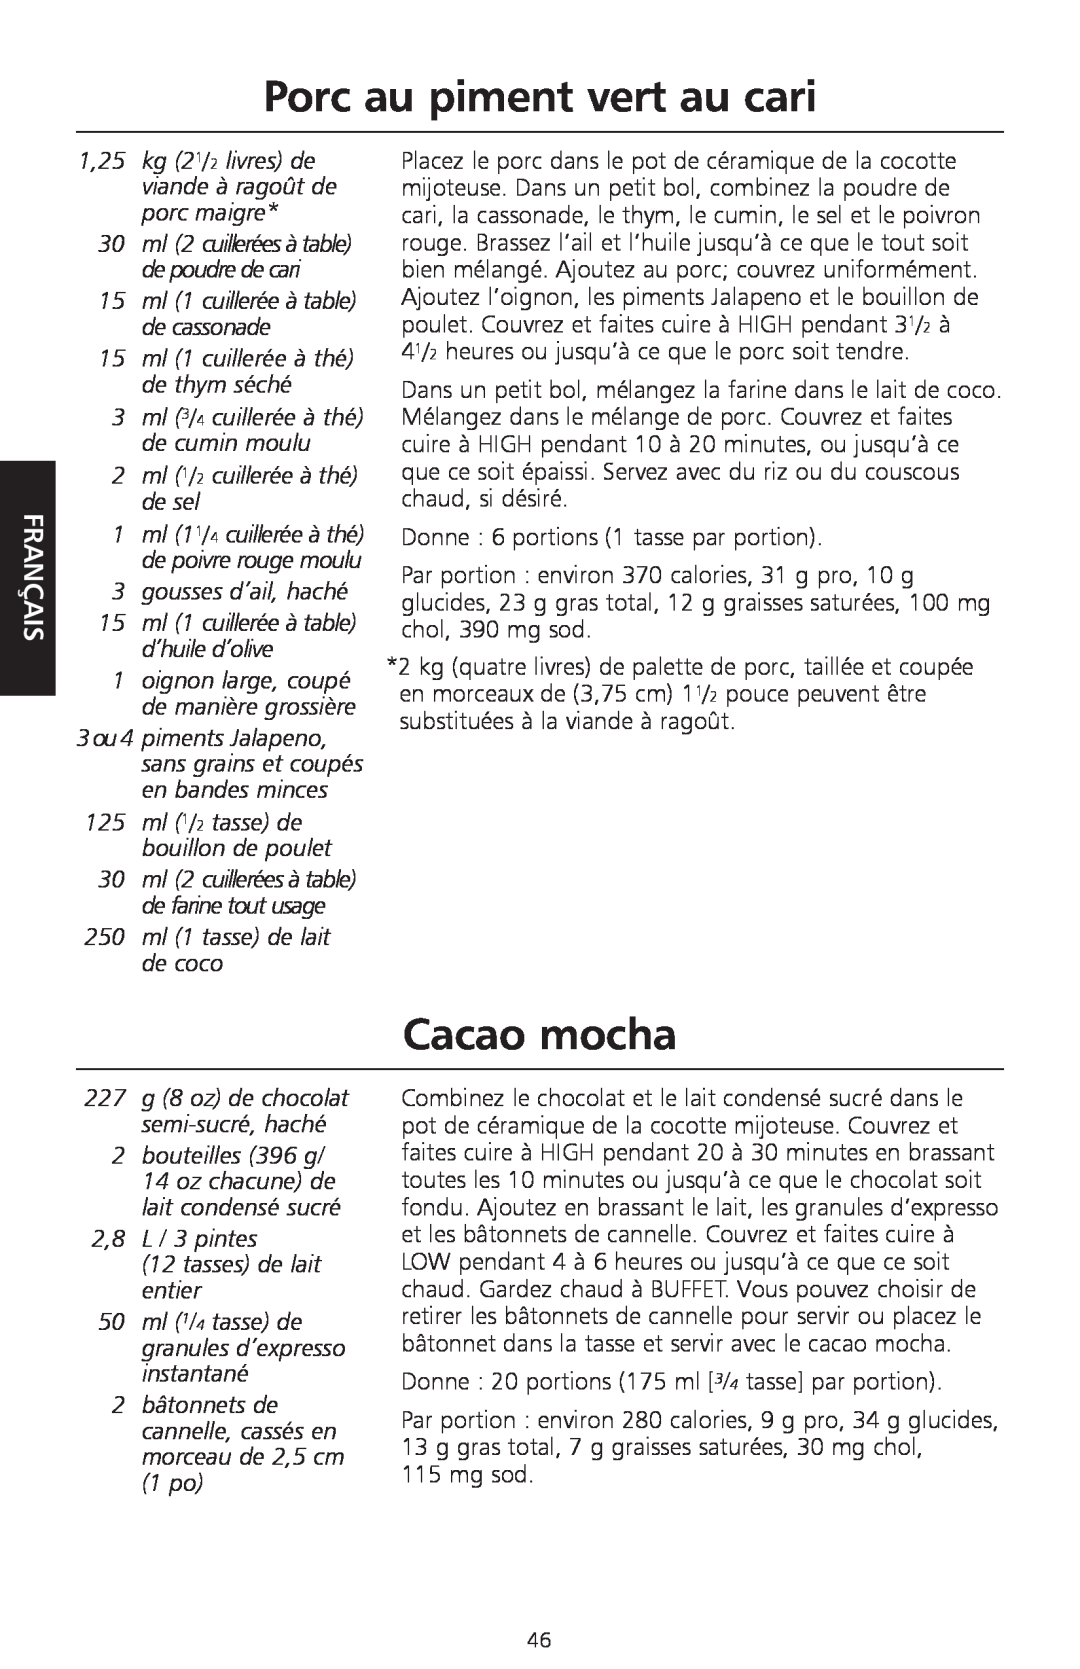 KitchenAid KSC700 manual Porc au piment vert au cari, Cacao mocha, 15ml 1 cuillerée à thé de thym séché, Français 